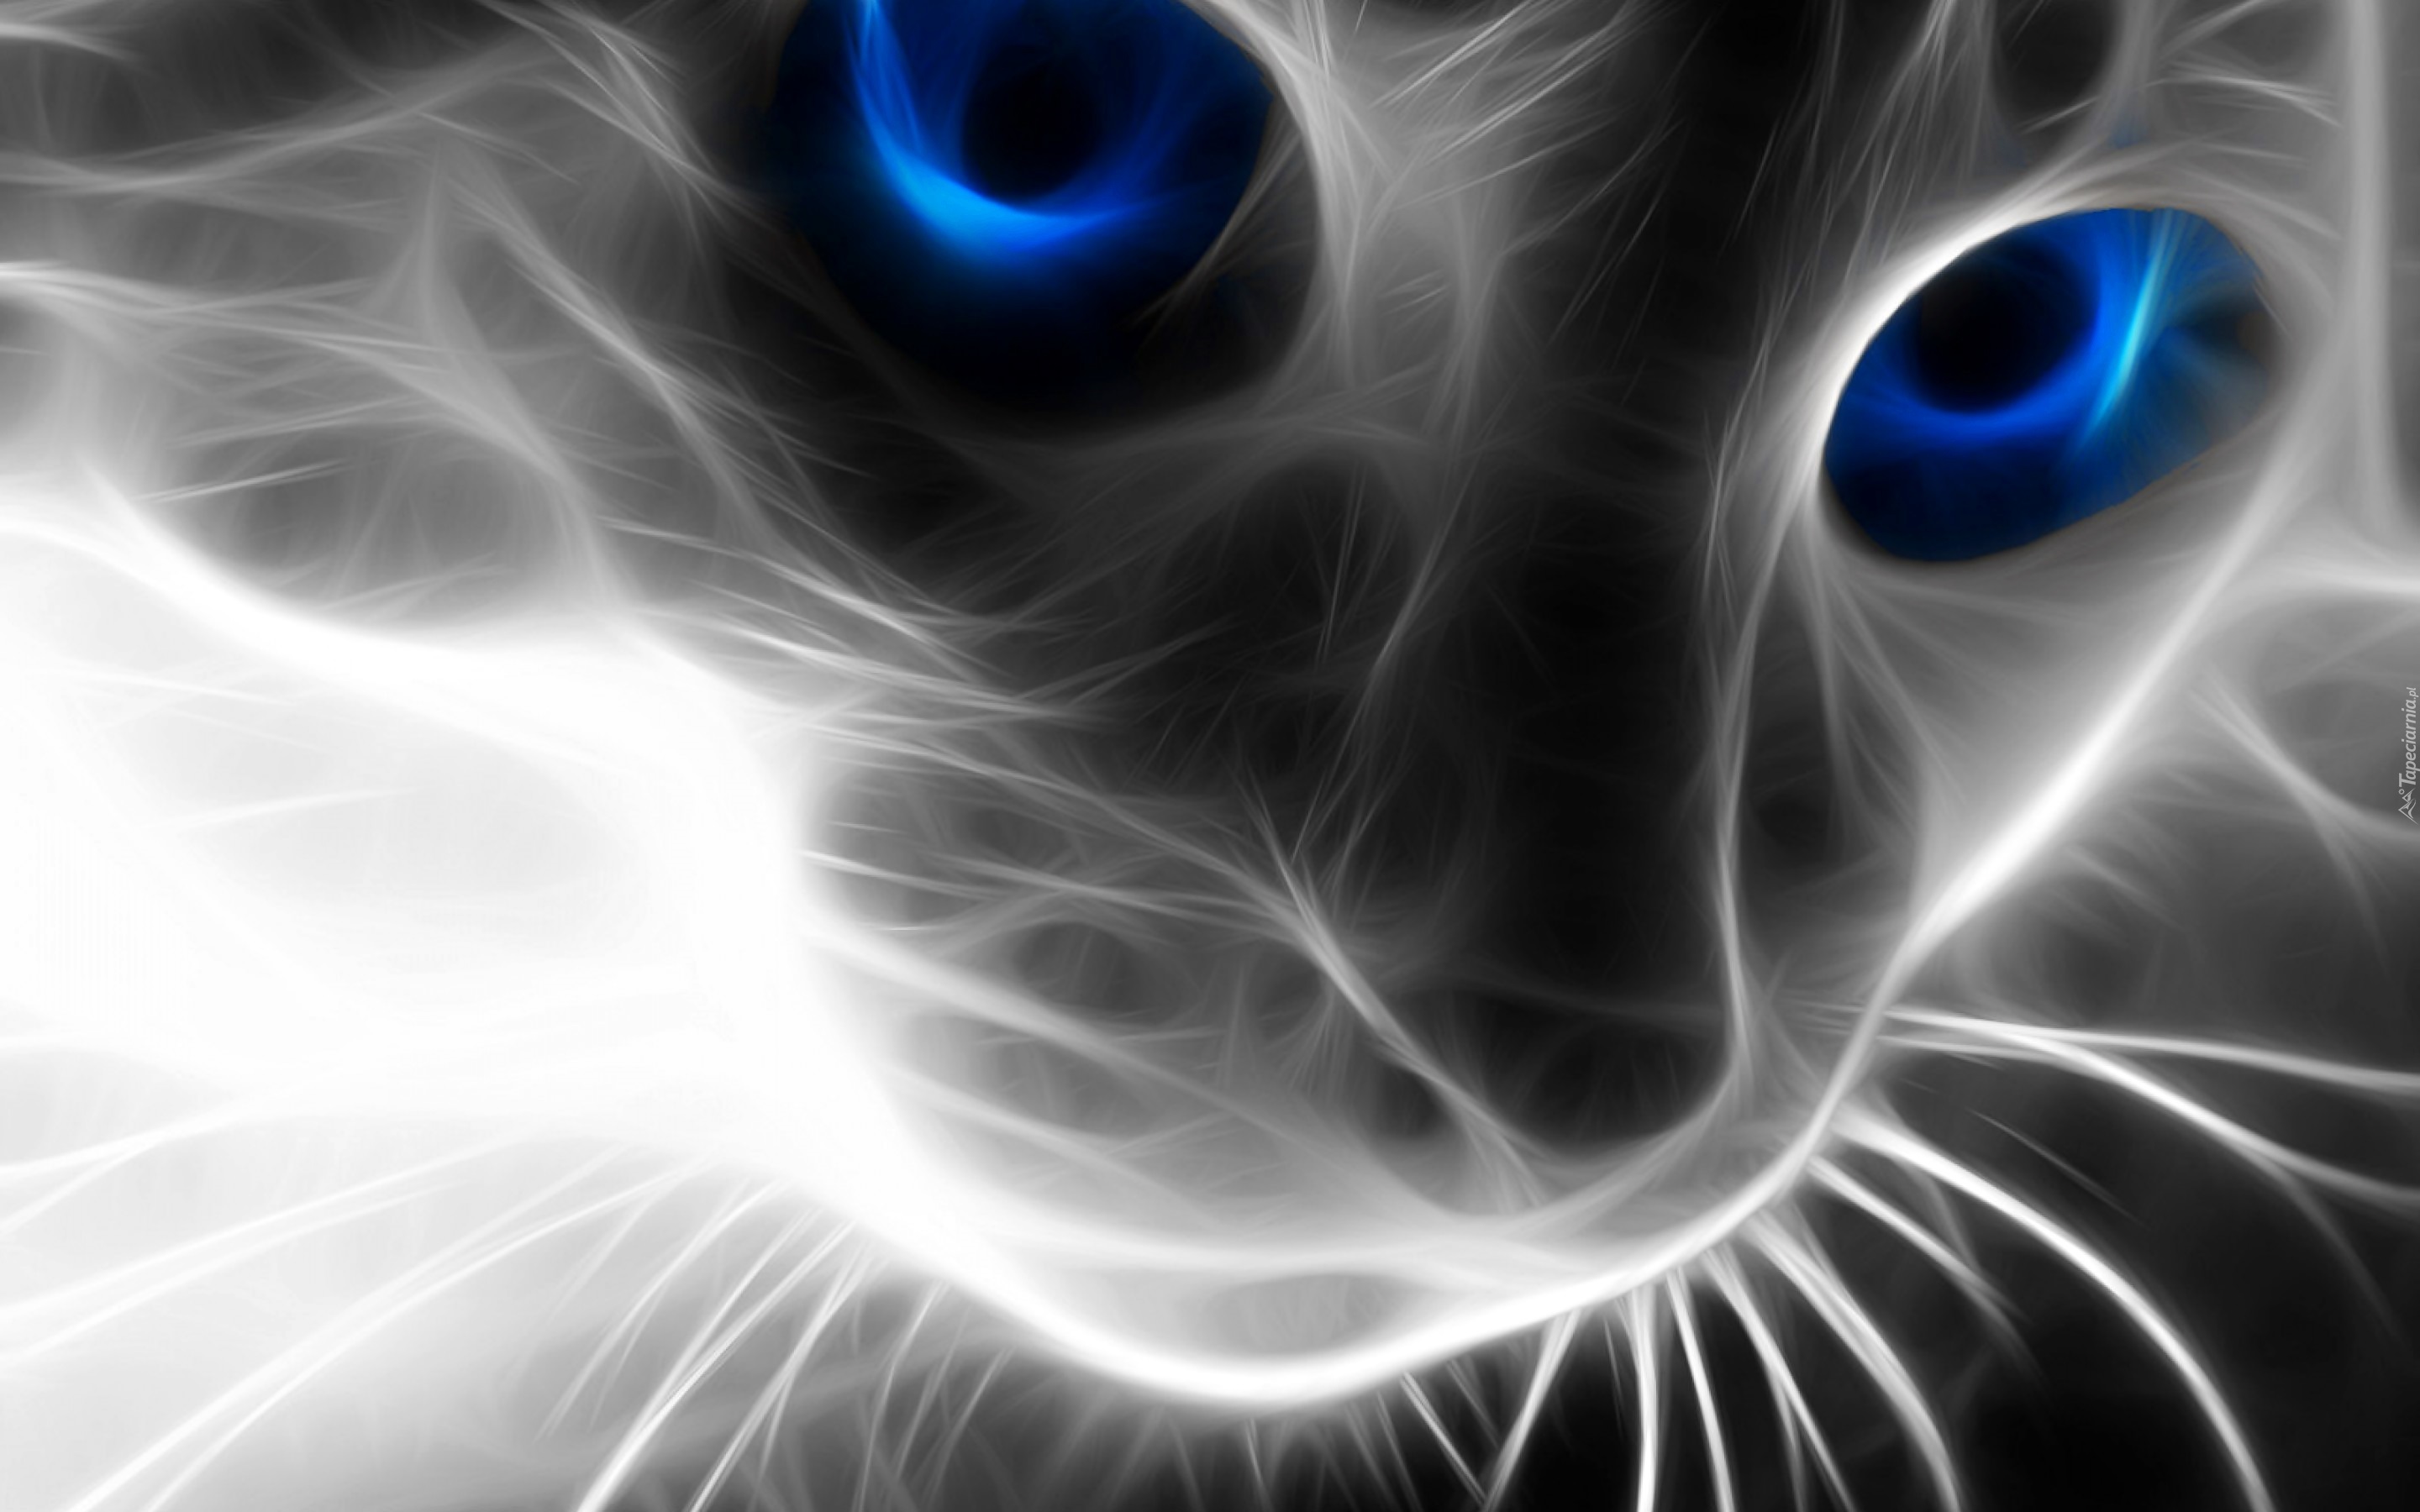 Kot, Sierść, Niebieskie, Oczy, 3D